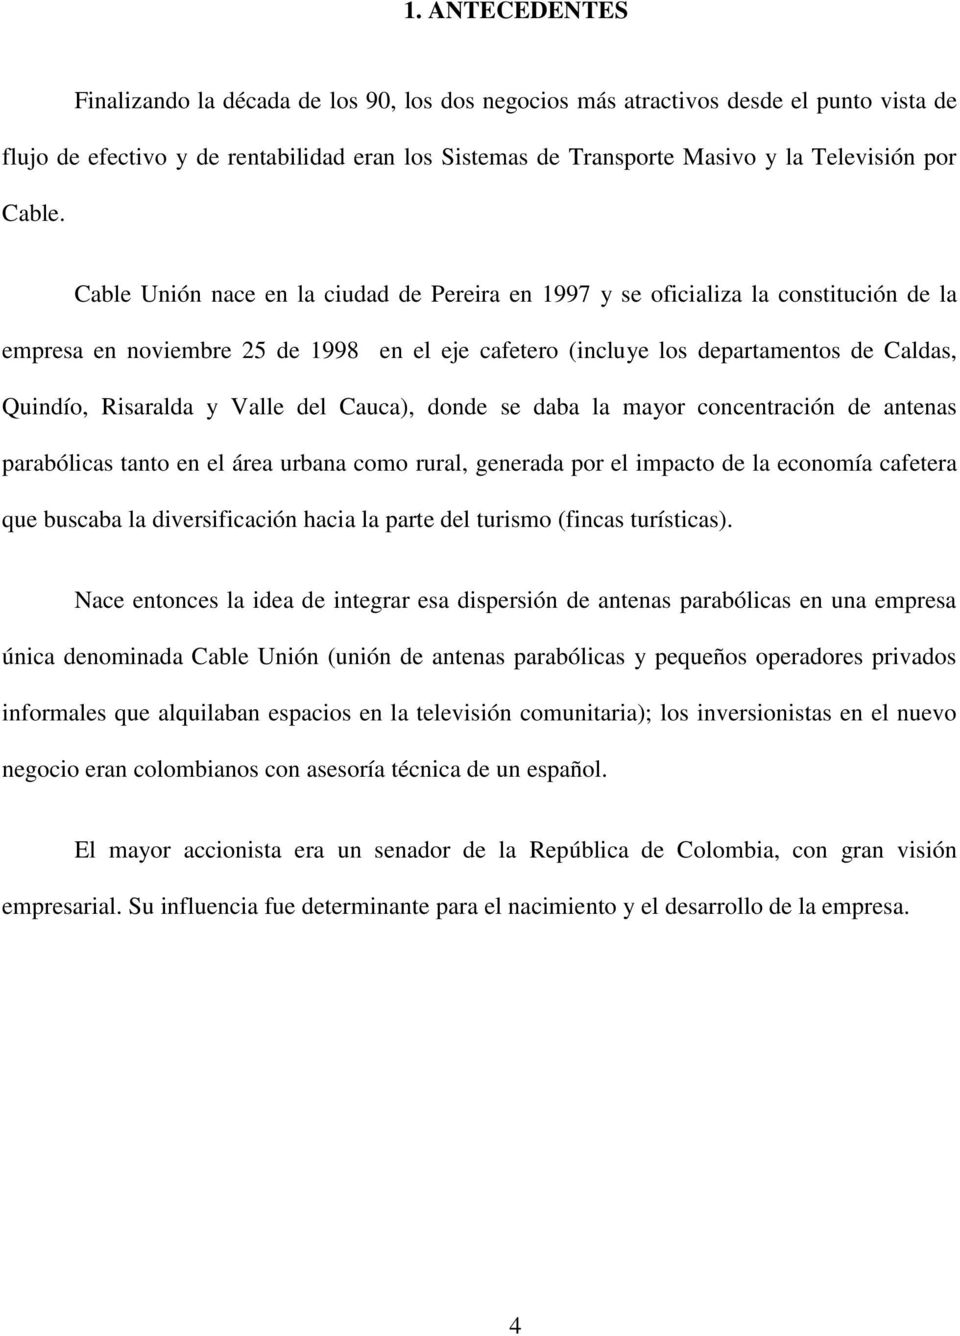 Cable Unión nace en la ciudad de Pereira en 1997 y se oficializa la constitución de la empresa en noviembre 25 de 1998 en el eje cafetero (incluye los departamentos de Caldas, Quindío, Risaralda y